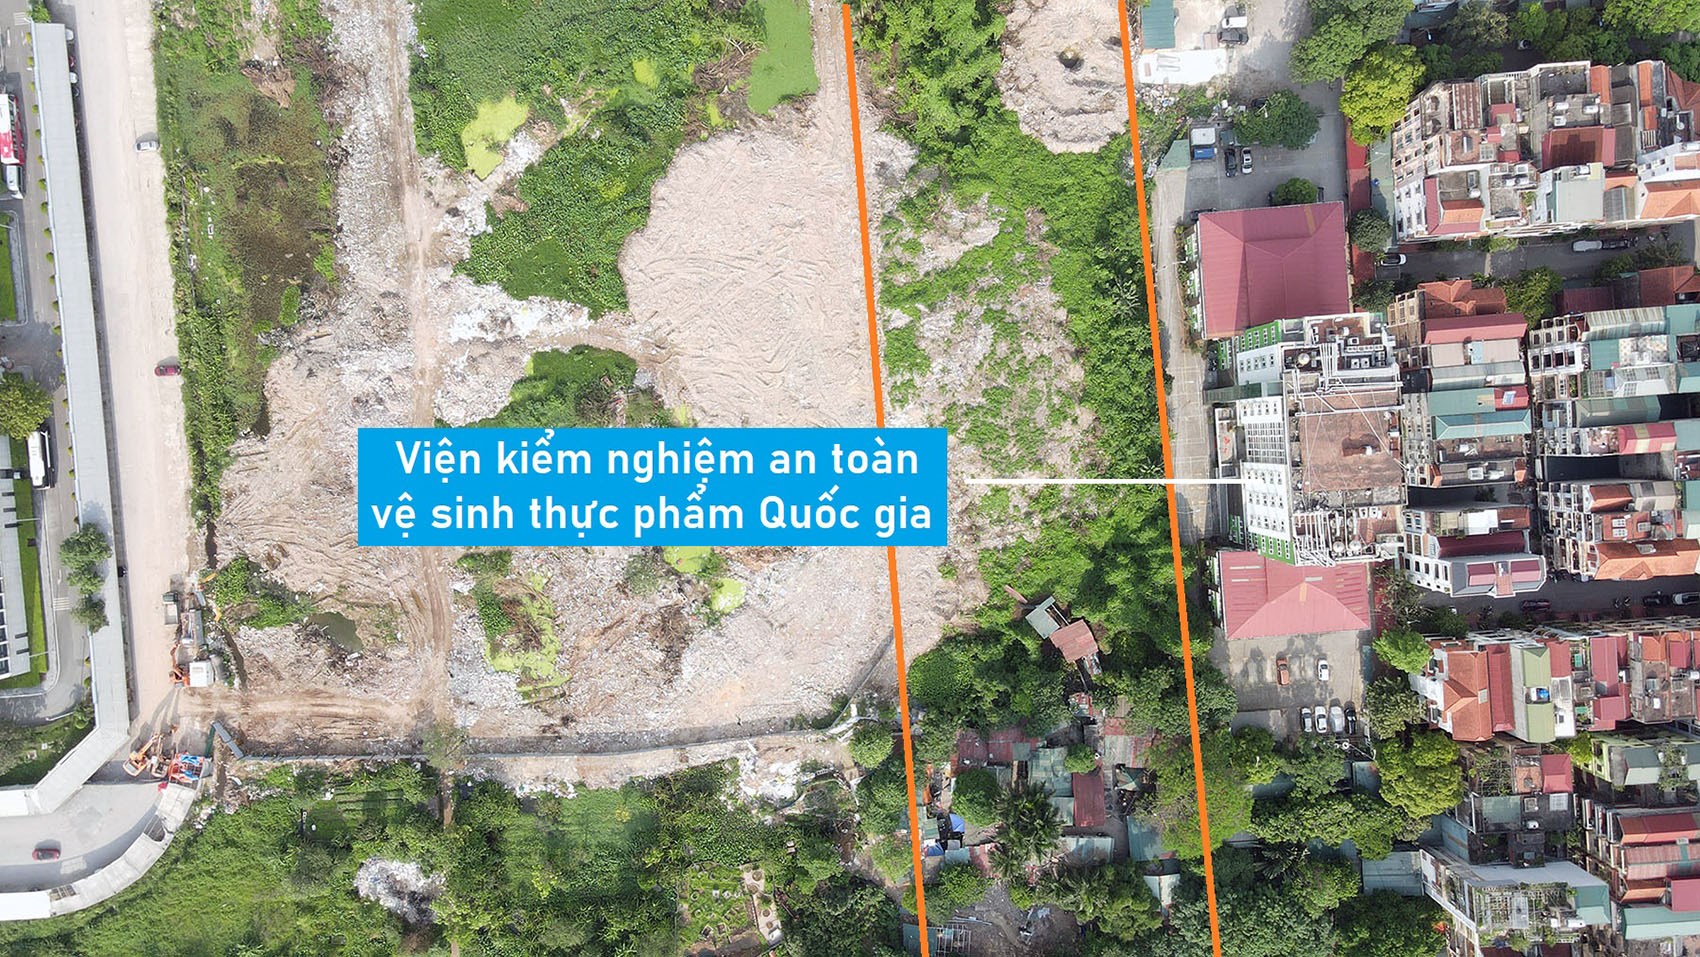 Toàn cảnh vị trí sẽ xây hầm chui tại nút giao đường Hoàng Quốc Việt - Phạm Văn Đồng